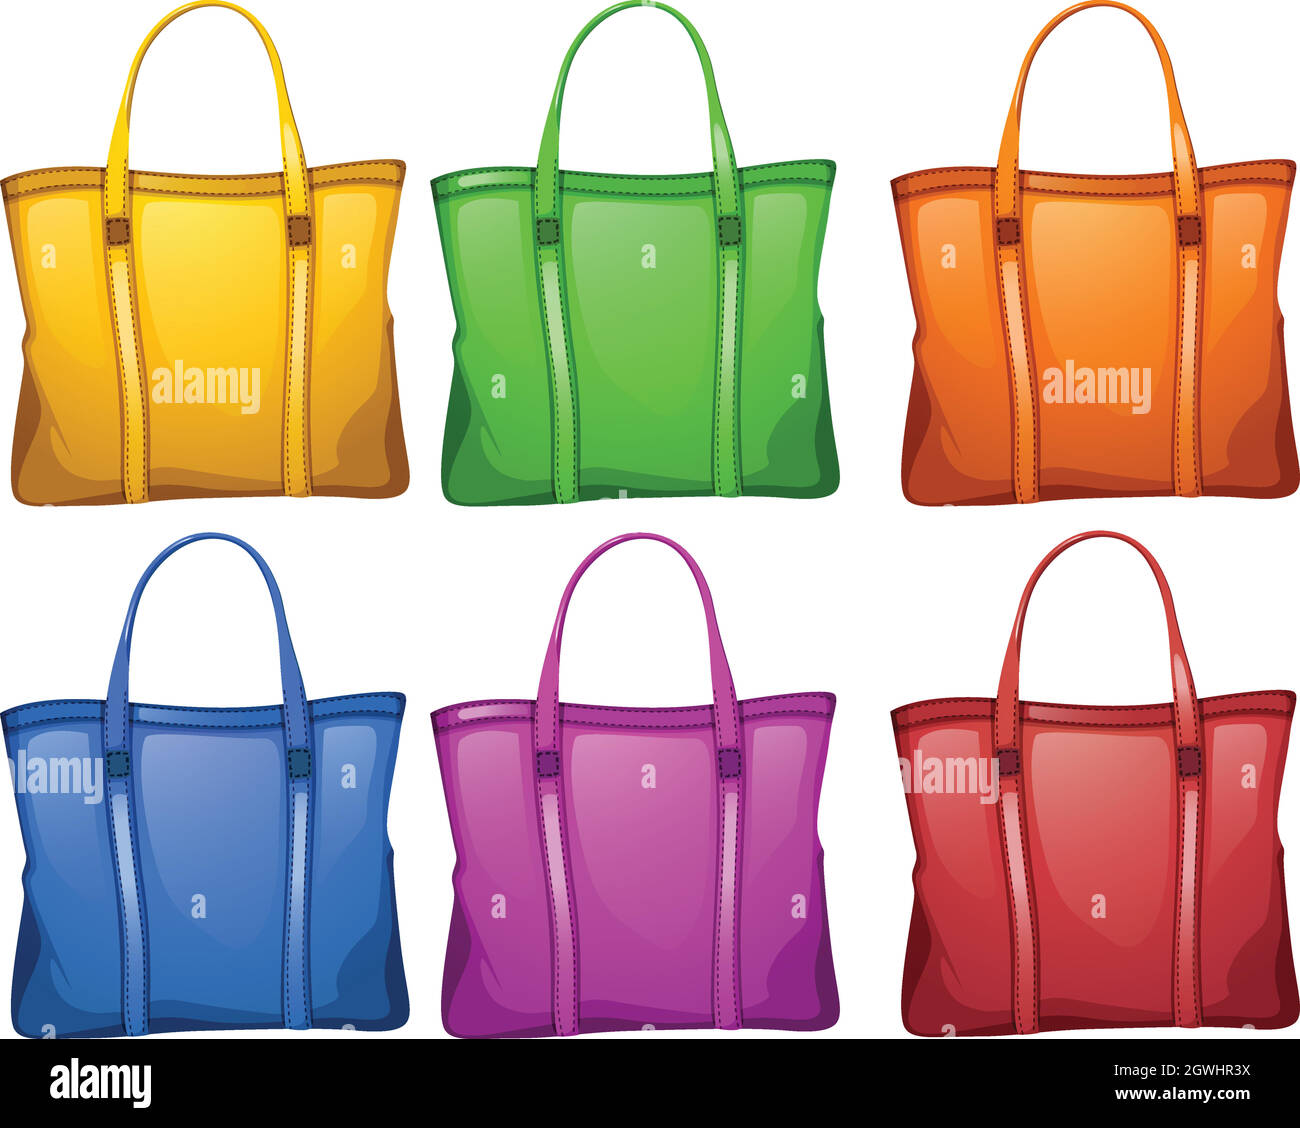 Colourful handbags Stock Vector